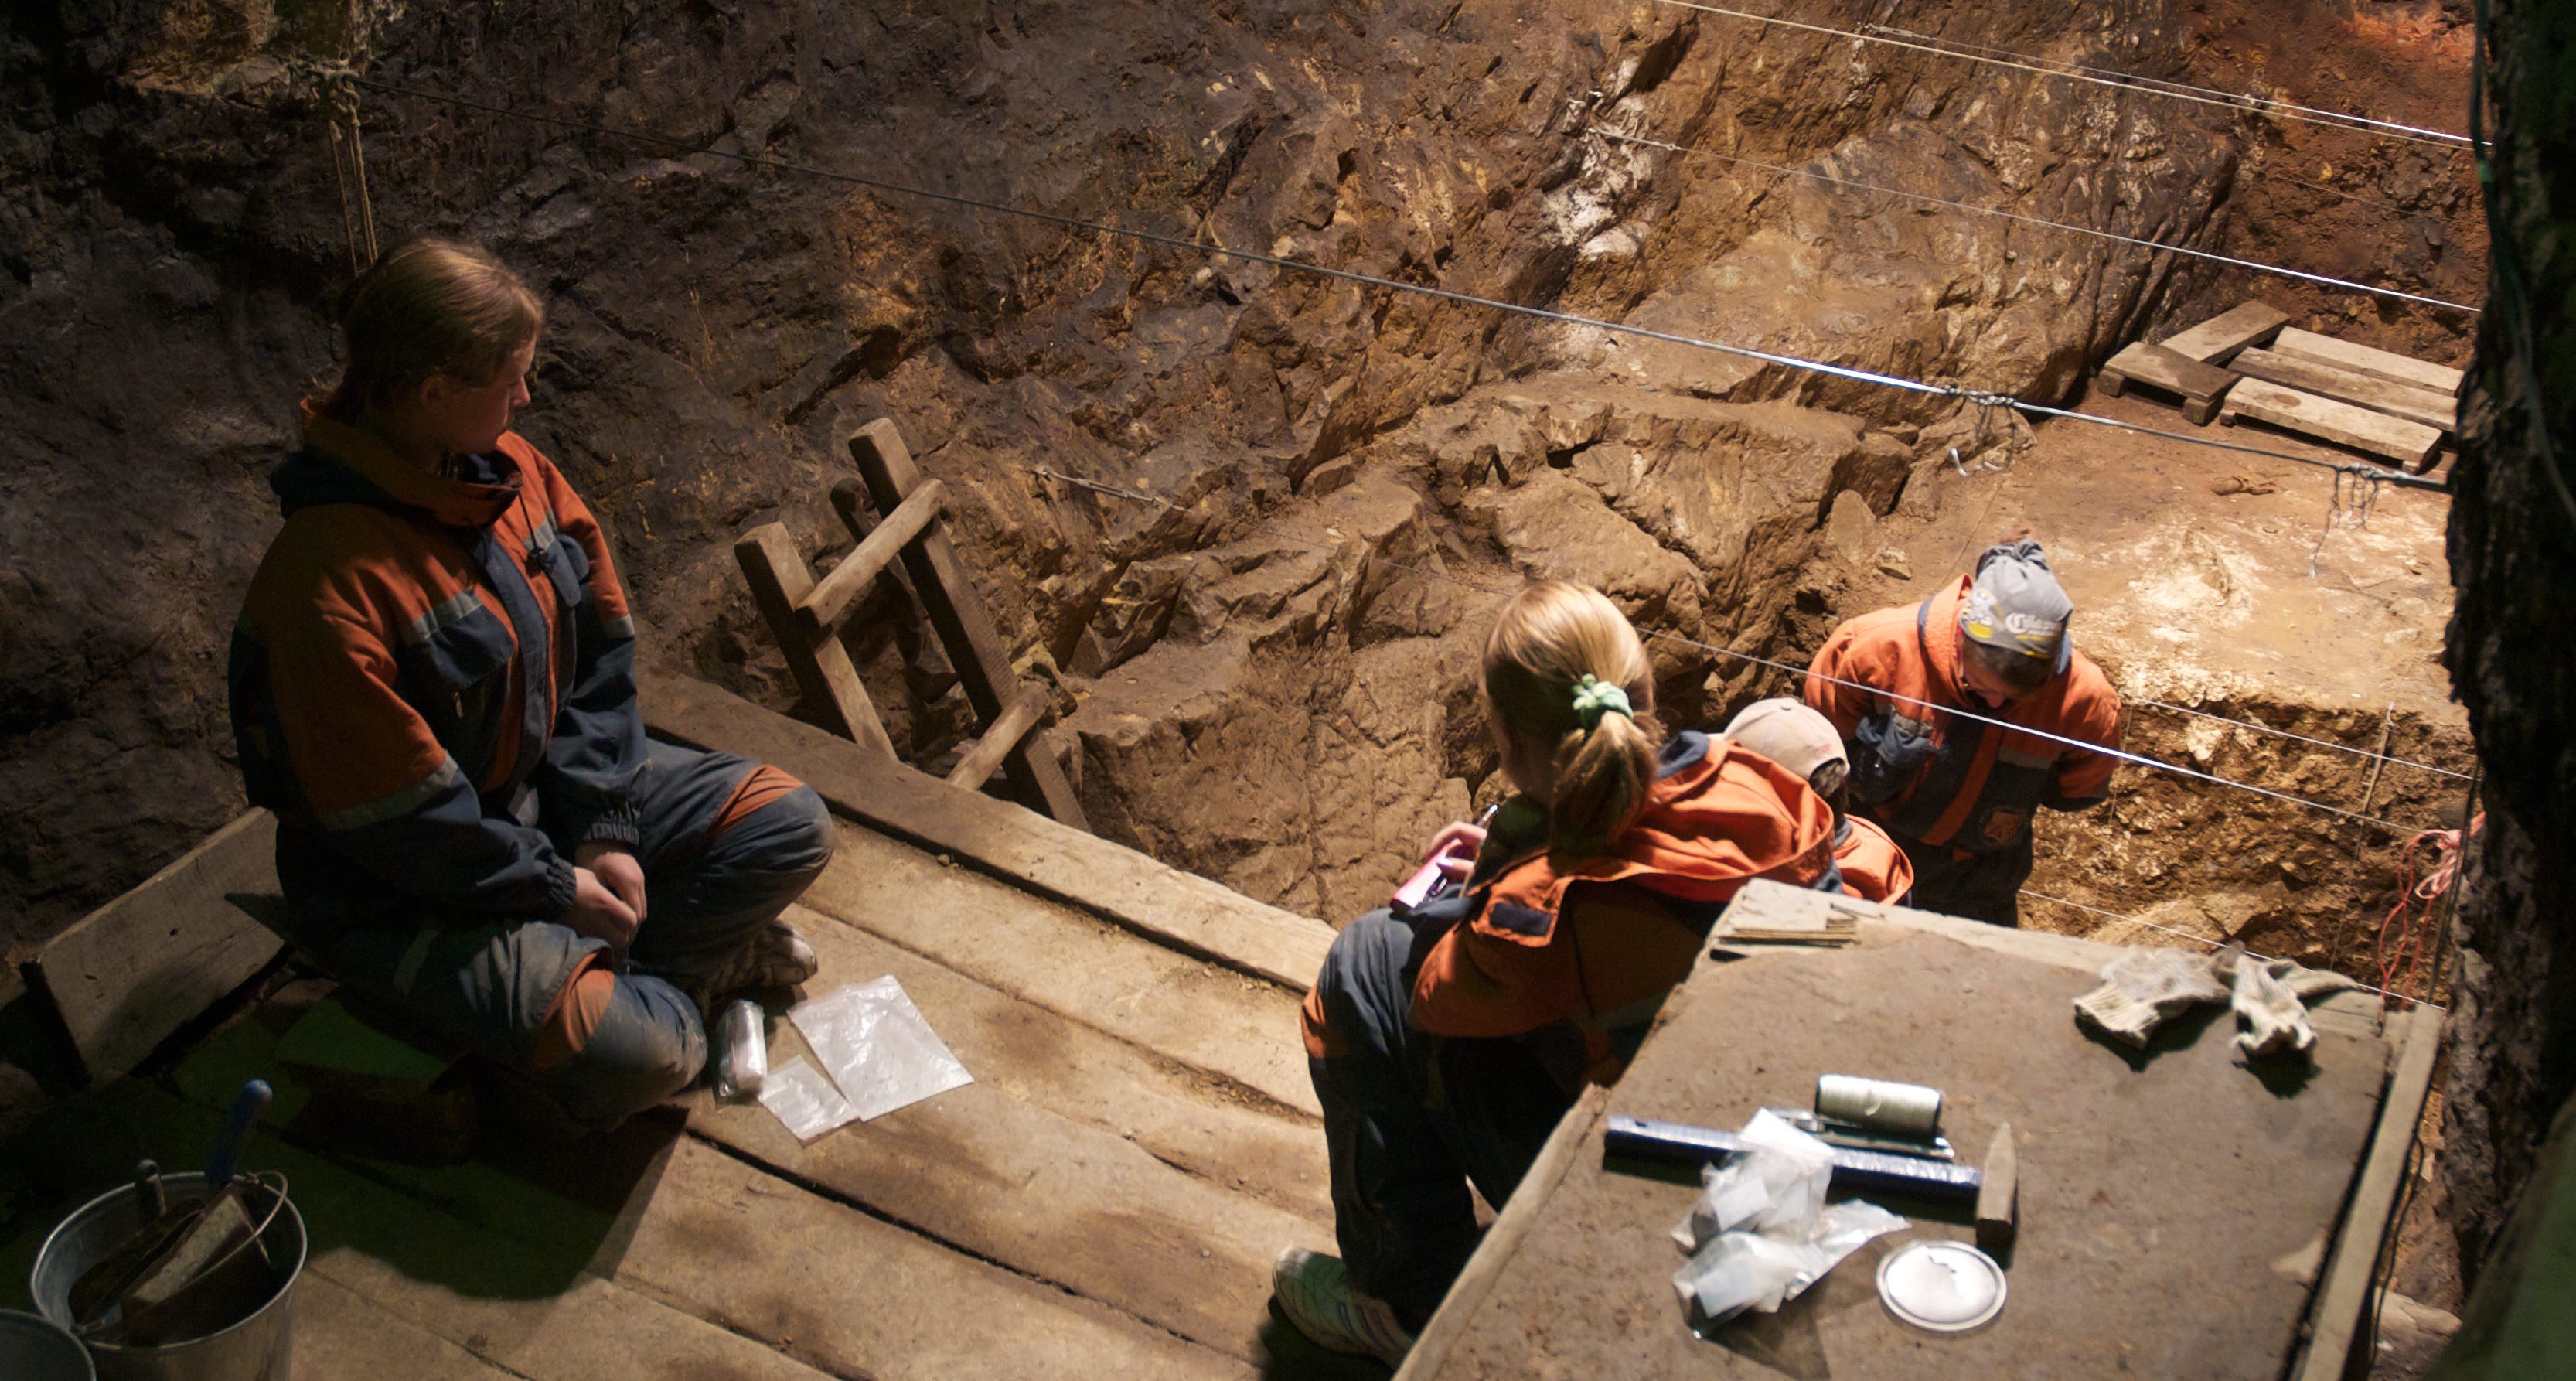 Dosud nejstarší ostatky denisovanů byly nalezeny v sibiřské jeskyni. Staré jsou přes 200 tisíc let